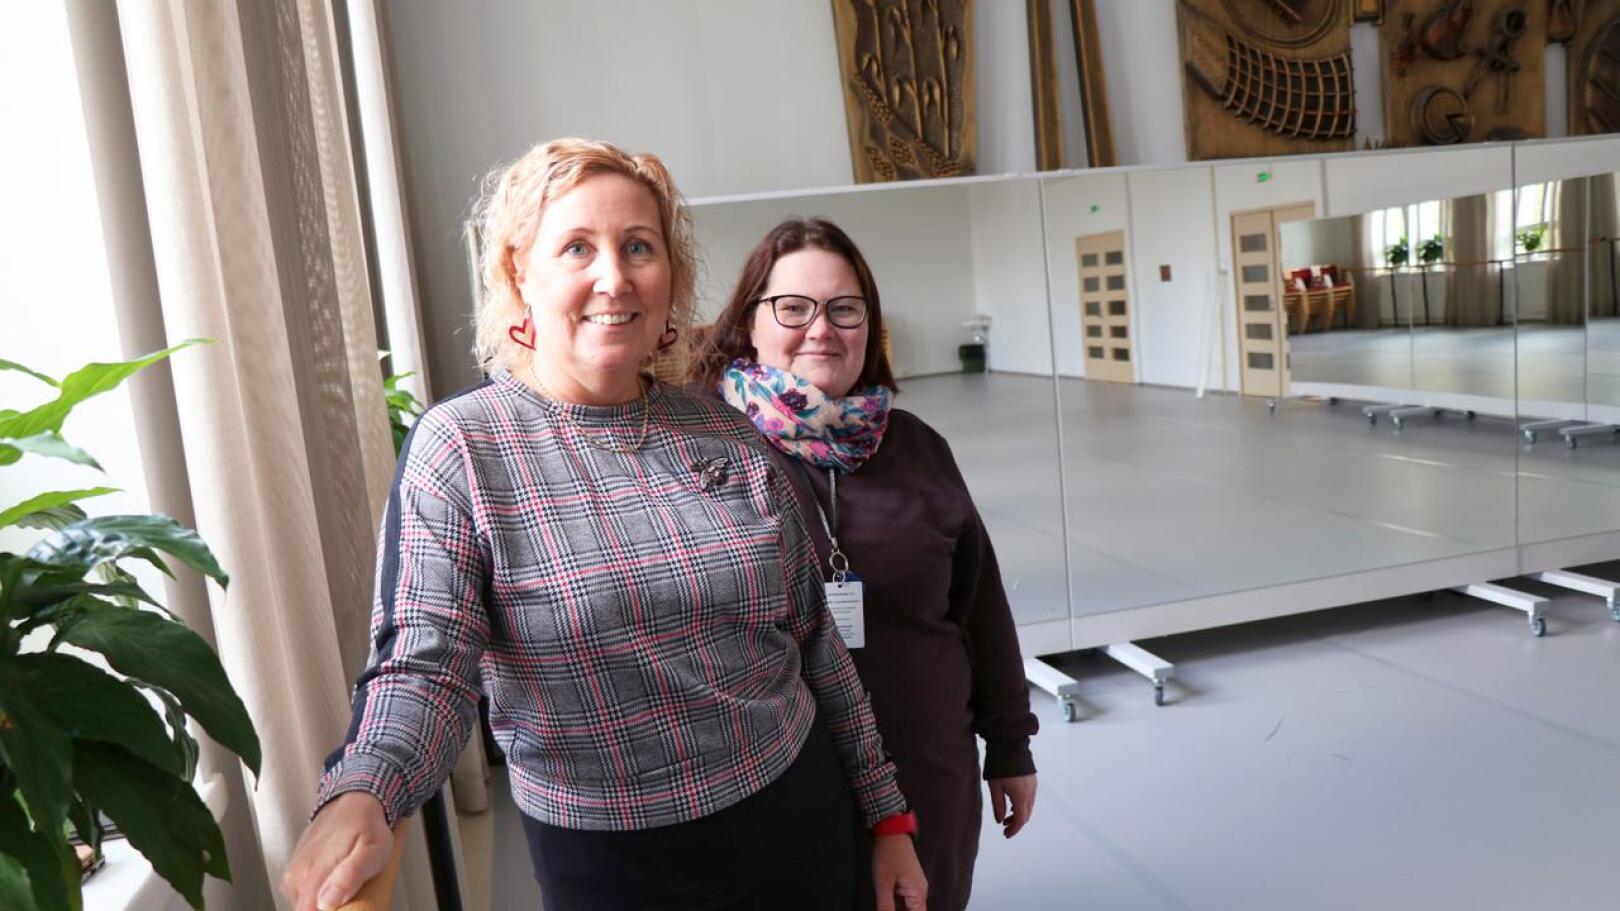 Mari Numminen ja Jaana Kiviniemi kertovat, että Opistonmäen päärakennuksen juhlasali muuntuu tarvittaessa tanssisaliksi. Tilaan on tuotu balettitanko, liikuteltavat peilit ja tanssimatto.